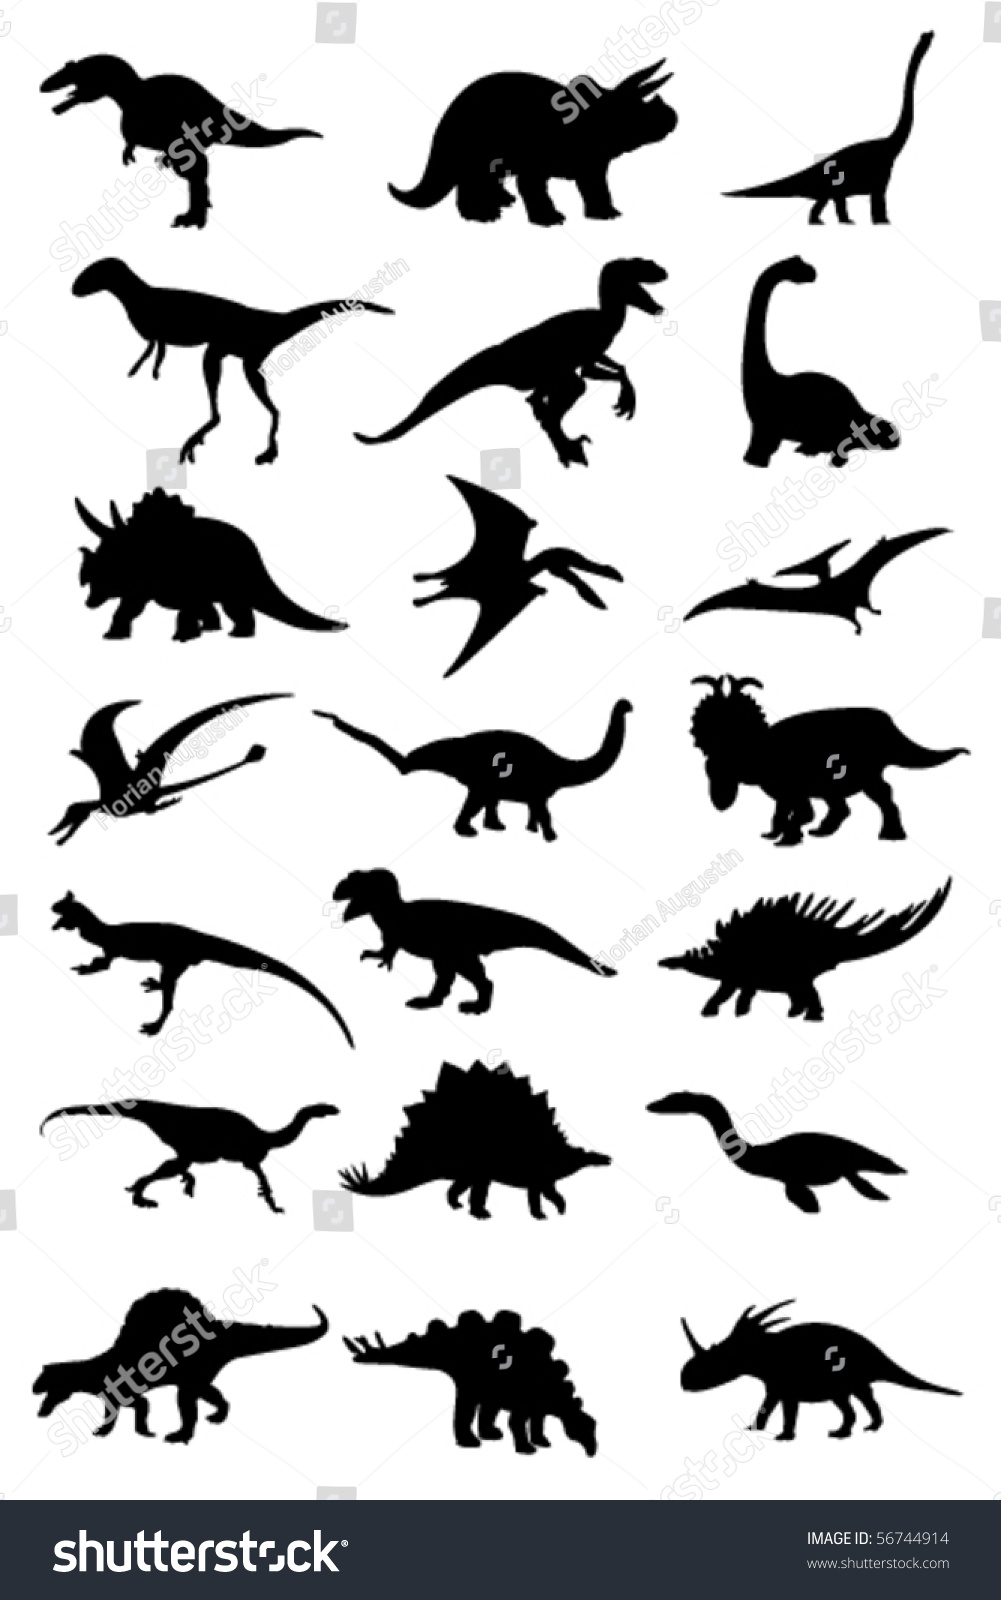 Vector Dinosaur Silhouette Stock Vector 56744914 - Shutterstock